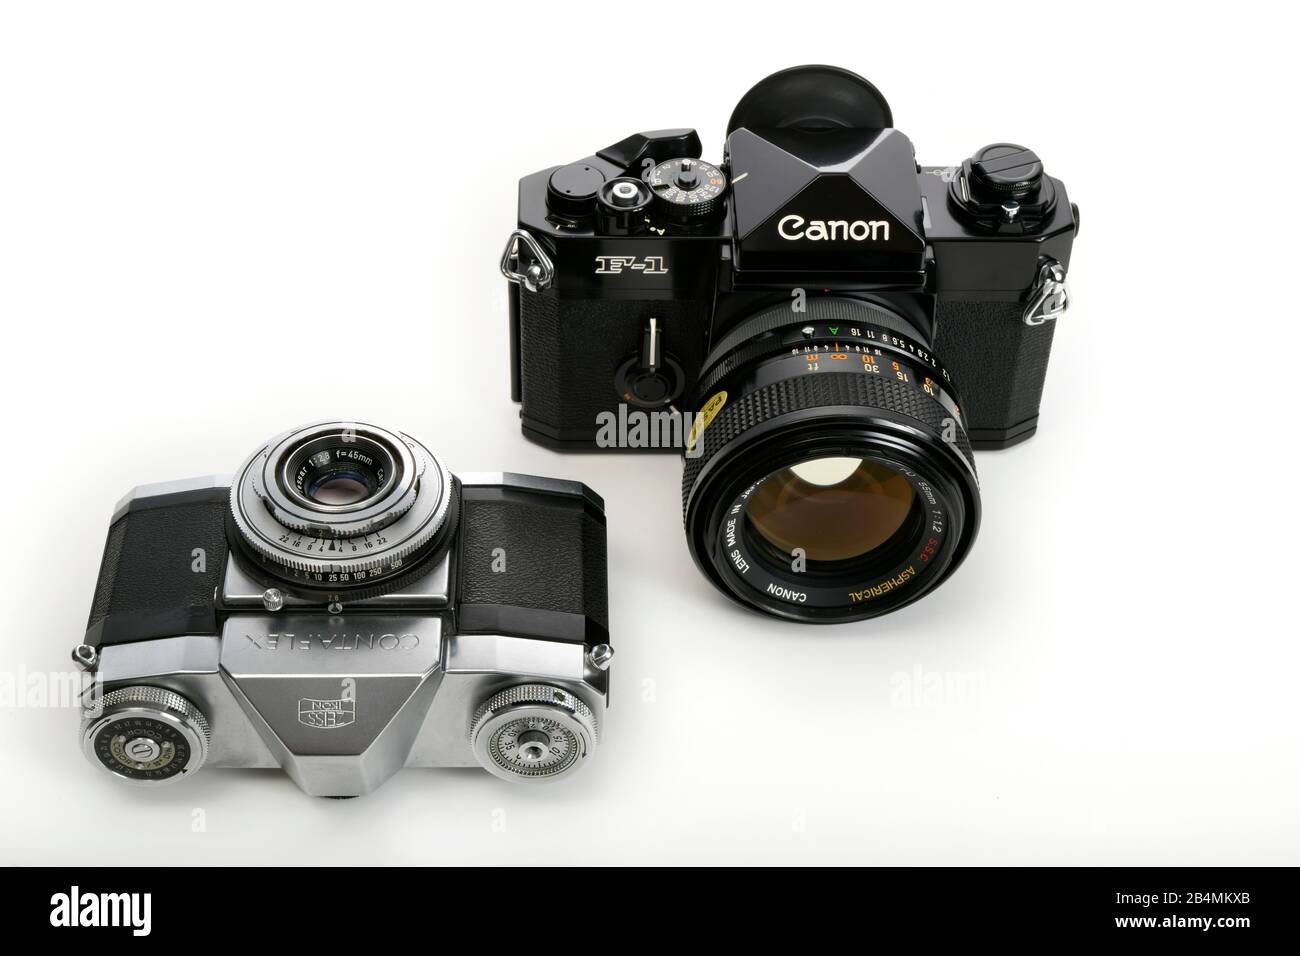 20 Jahre Meilensteine der Kamerageschichte, Zeiss-Ikon Contaflex mit Tessar 2.8 45mm aus dem Jahr 1959 und Canon F-1 mit FD 1.2 55mm Aspherical aus de Stock Photo